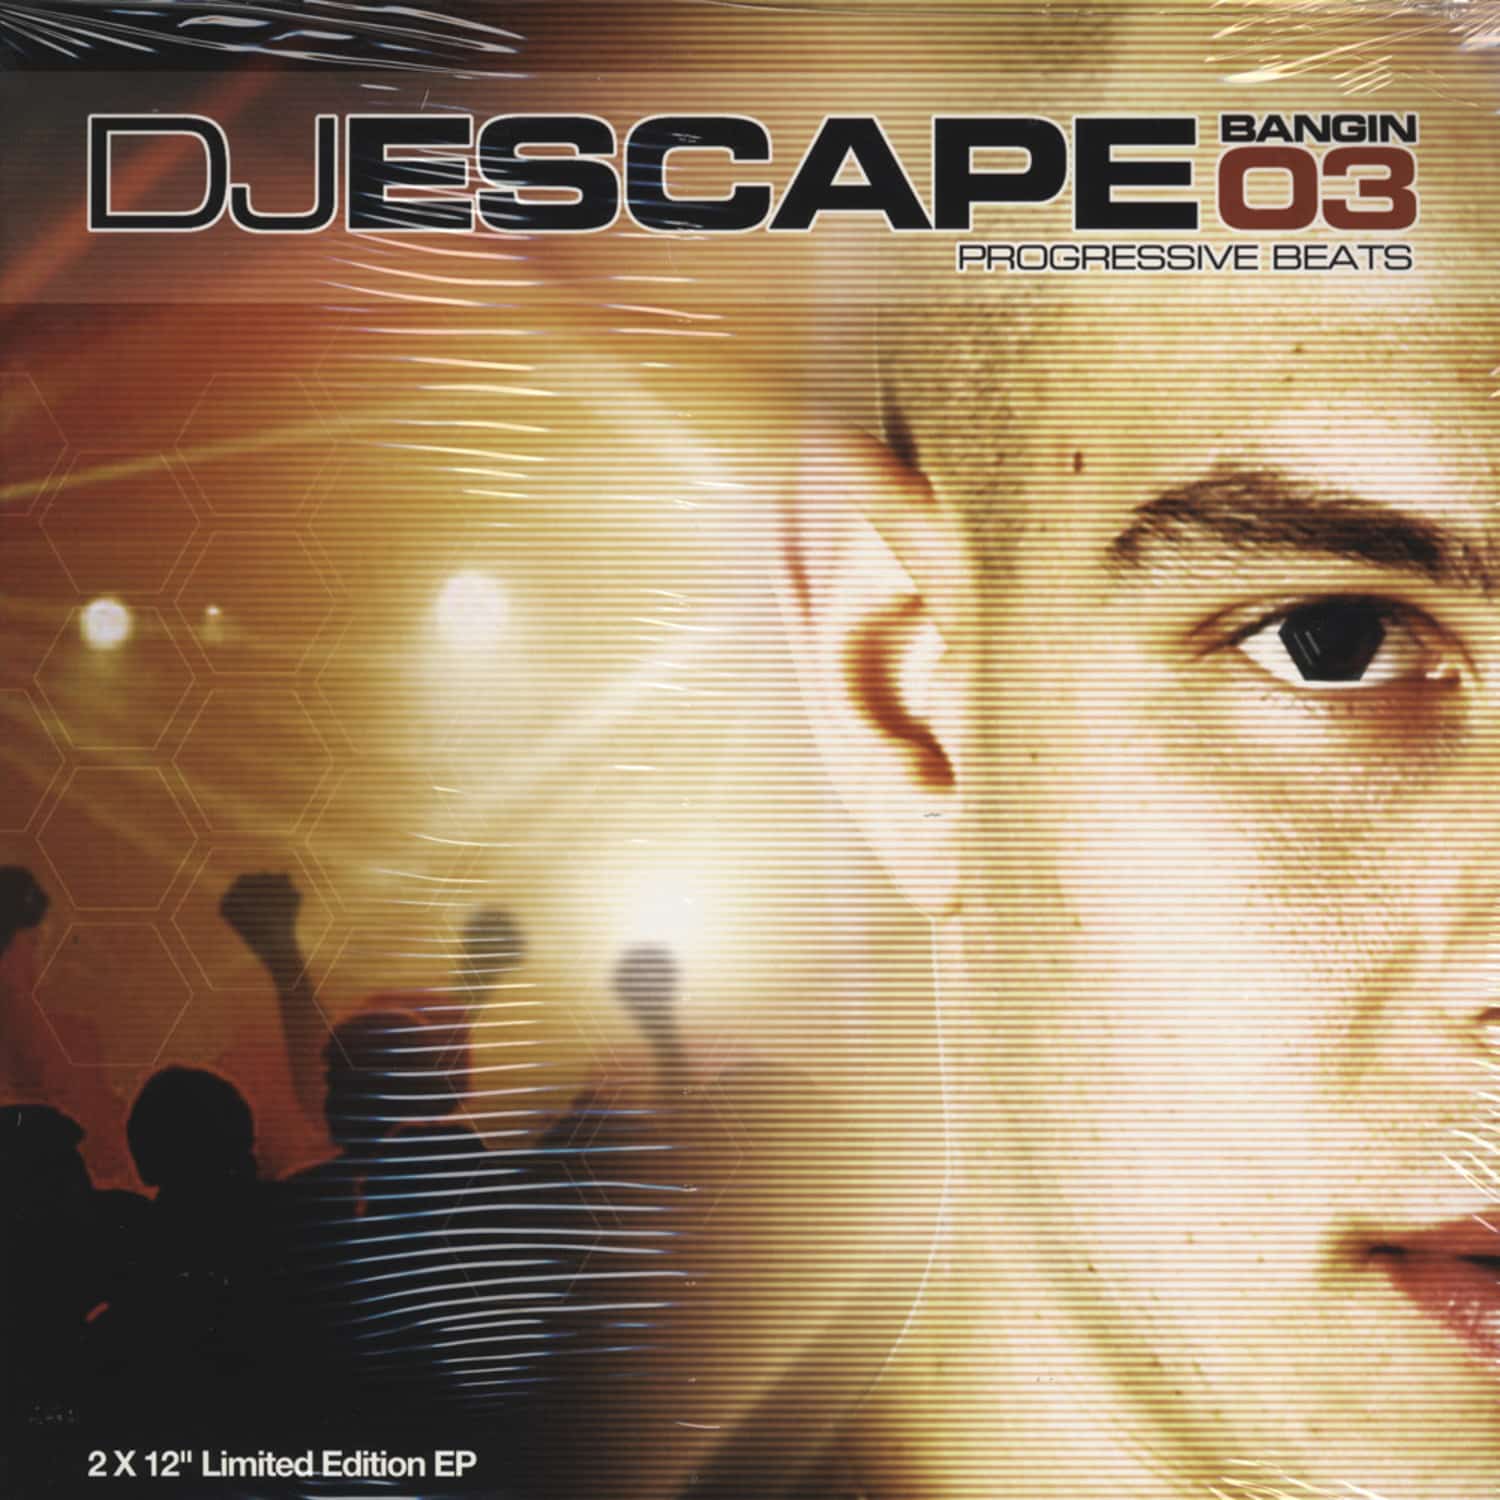 DJ Escape - Banging 03 ep Progressive Beats 